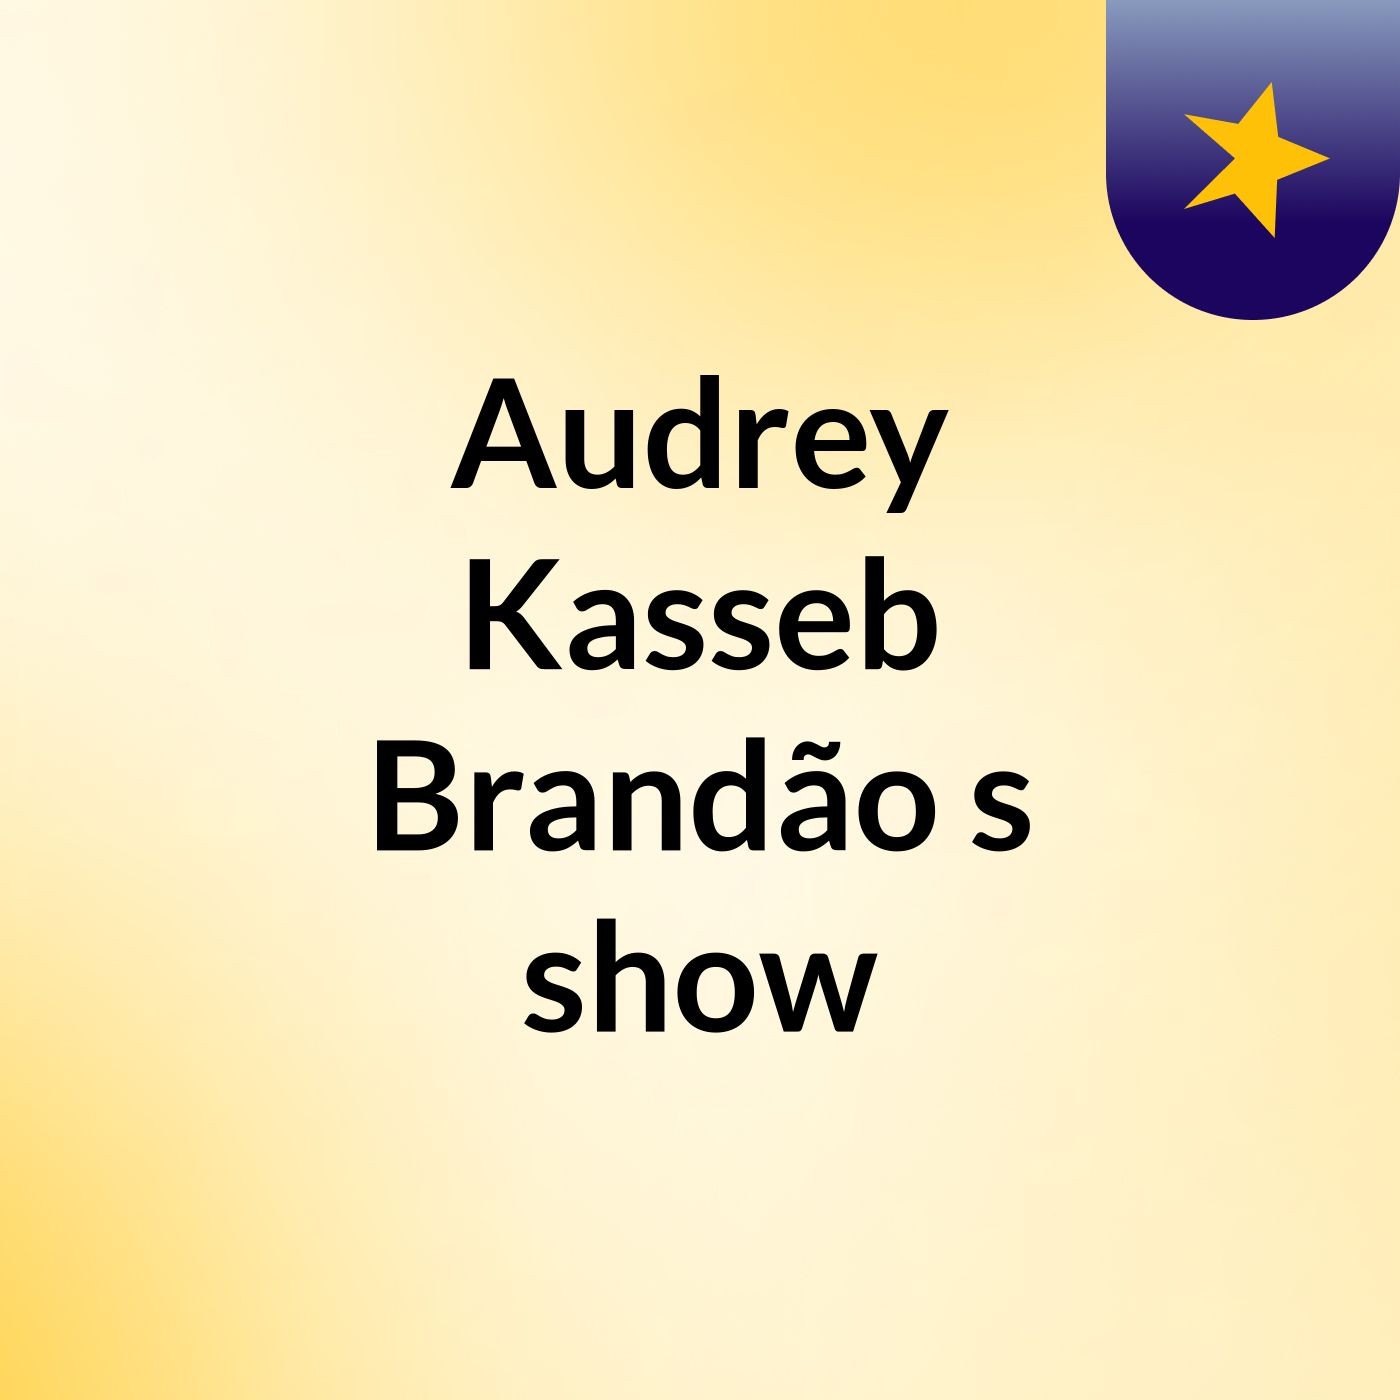 Audrey Kasseb Brandão's show